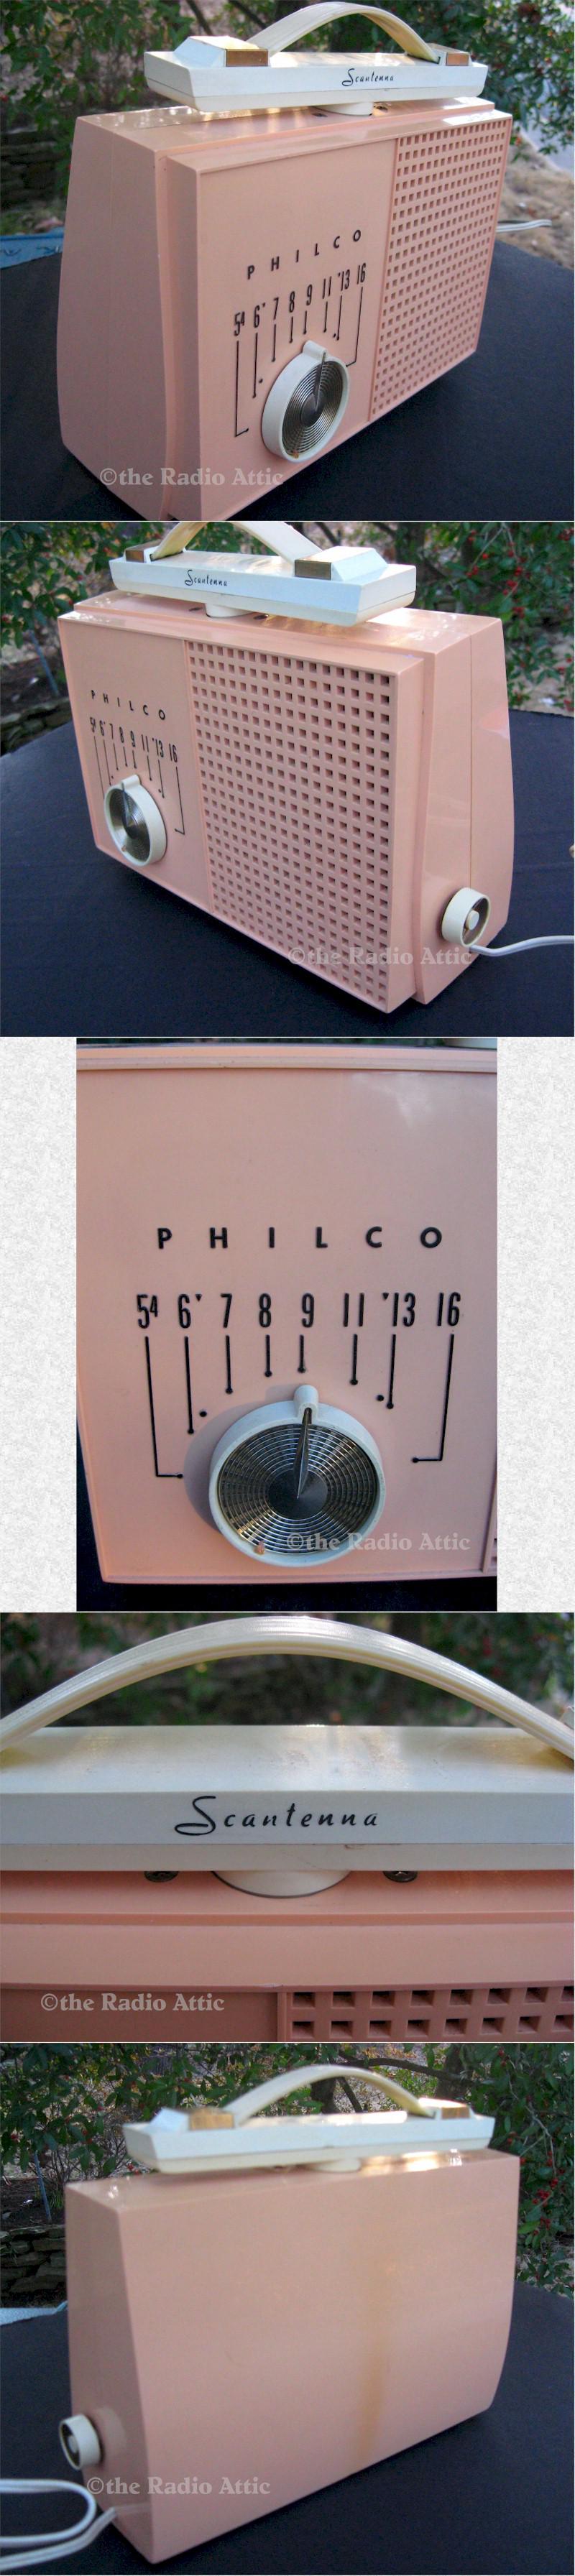 Philco G-681 "Scantenna" Portable (1959)